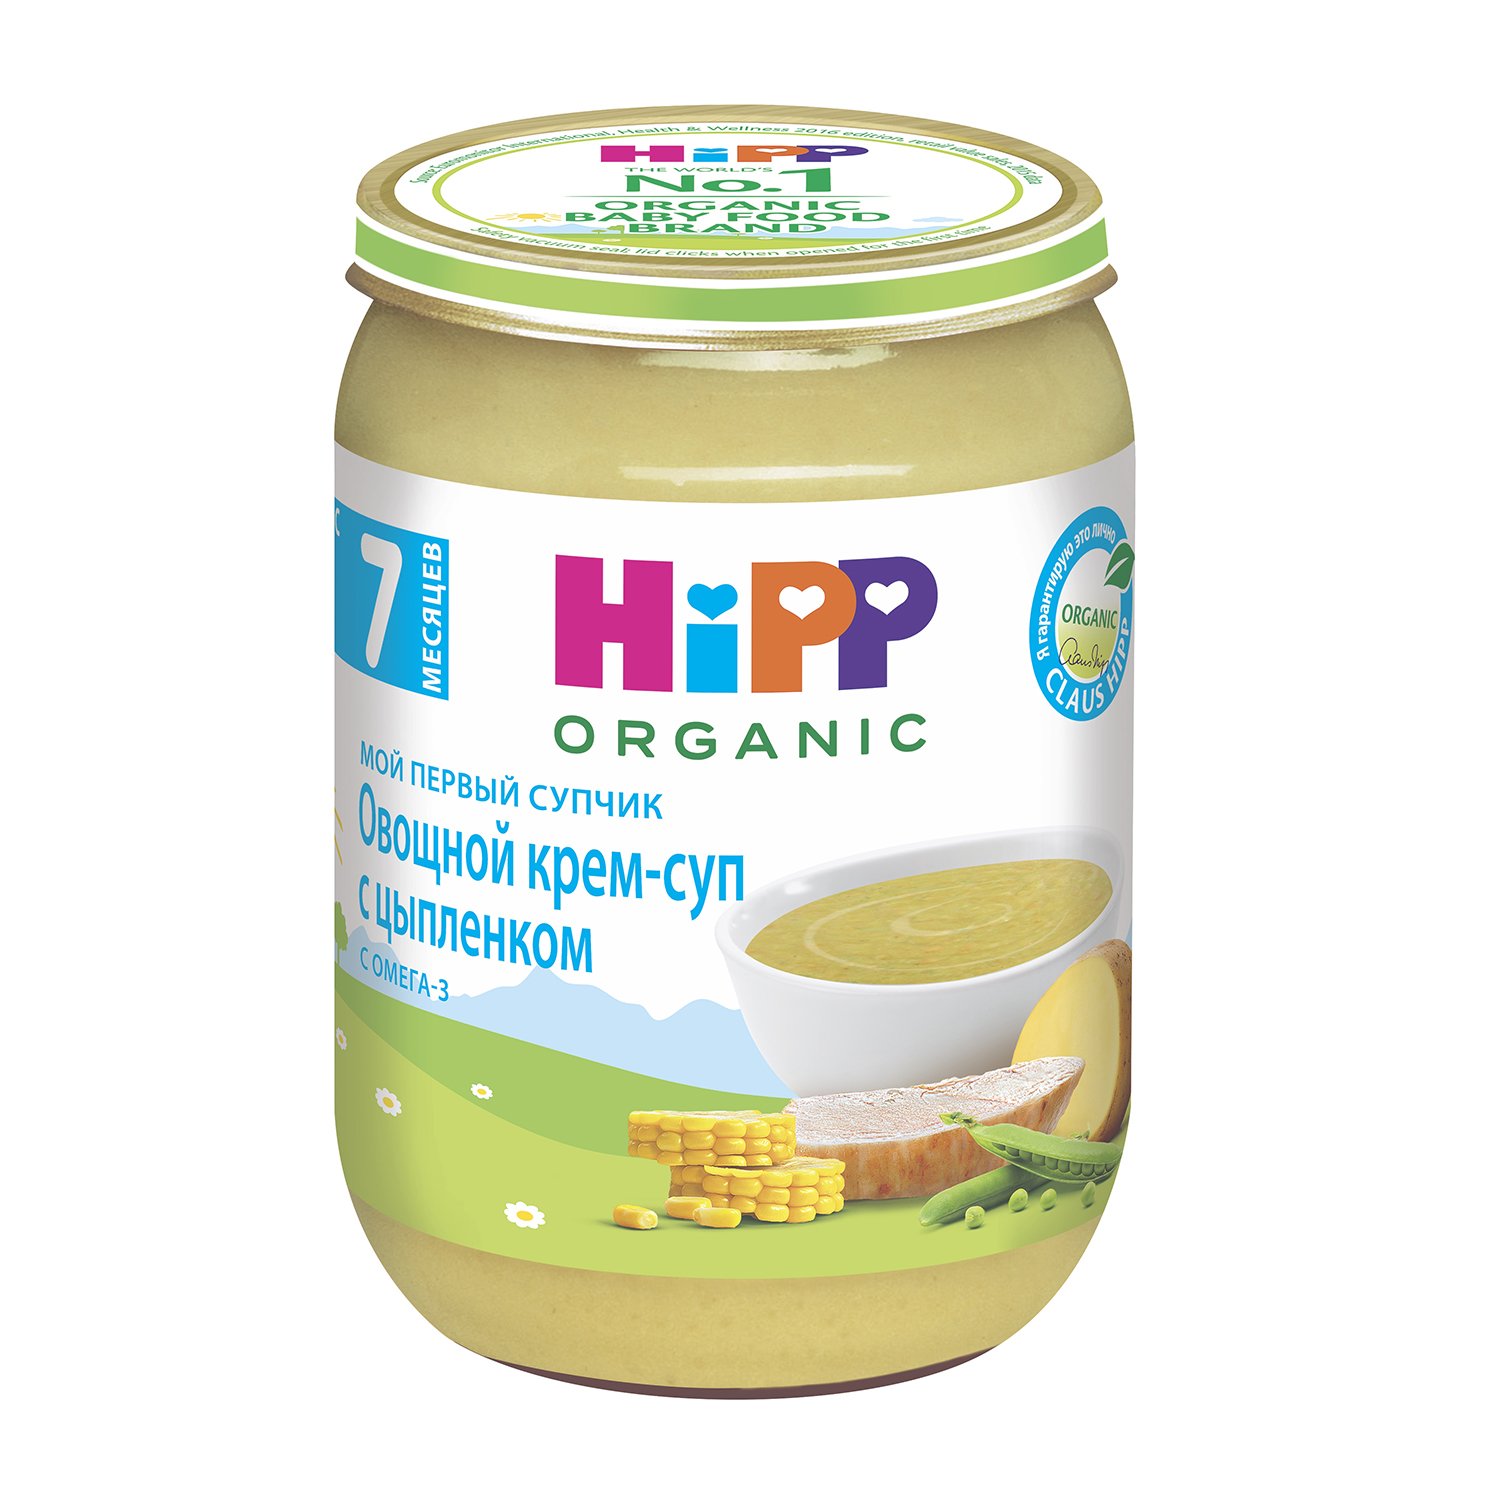 Hipp organic овощной крем-суп с цыпленком с омега-3 7+месяцев 190г